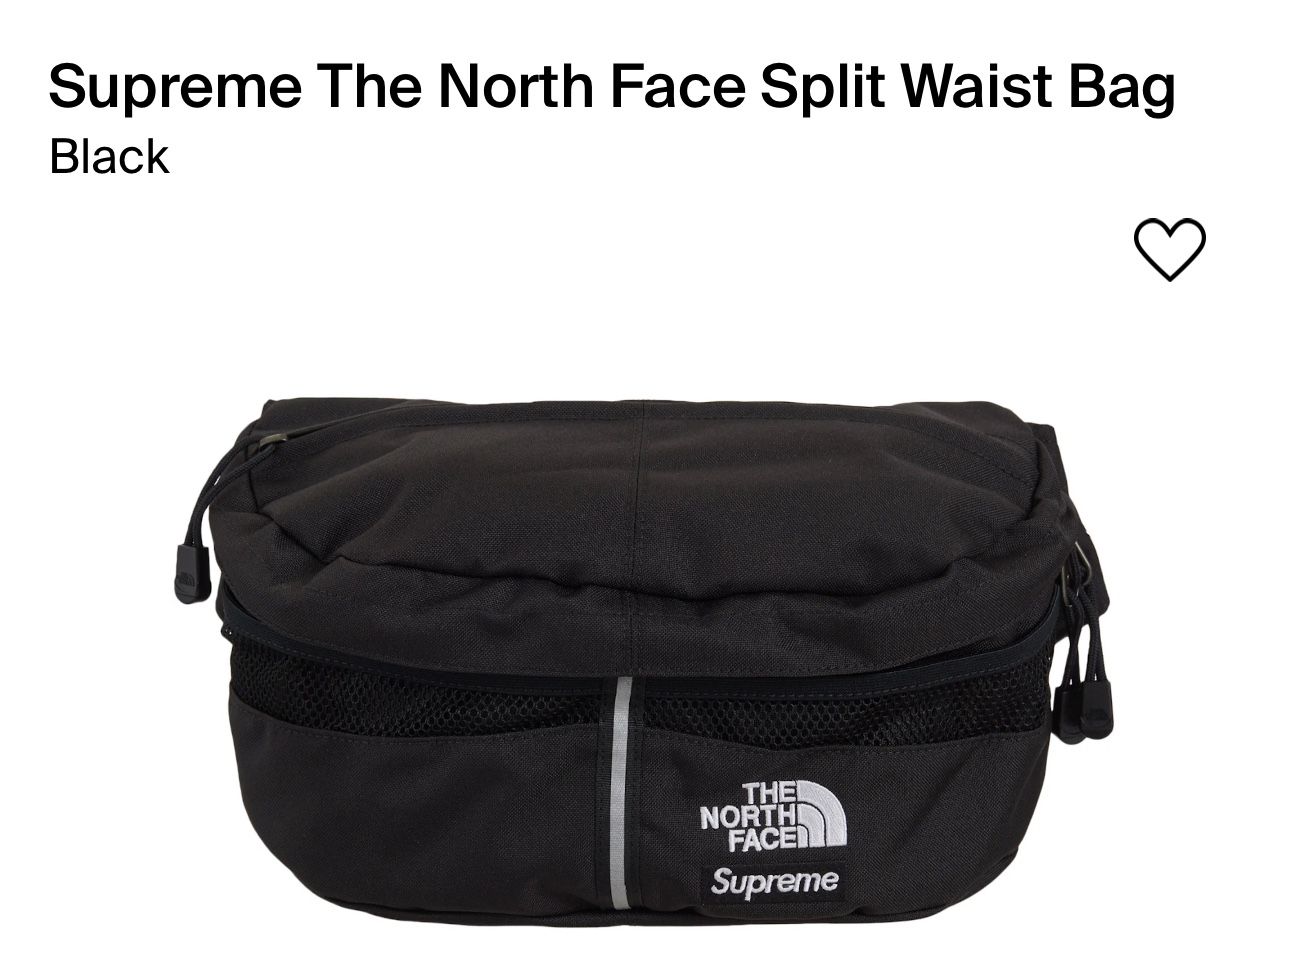 Supreme NorthFace Bag